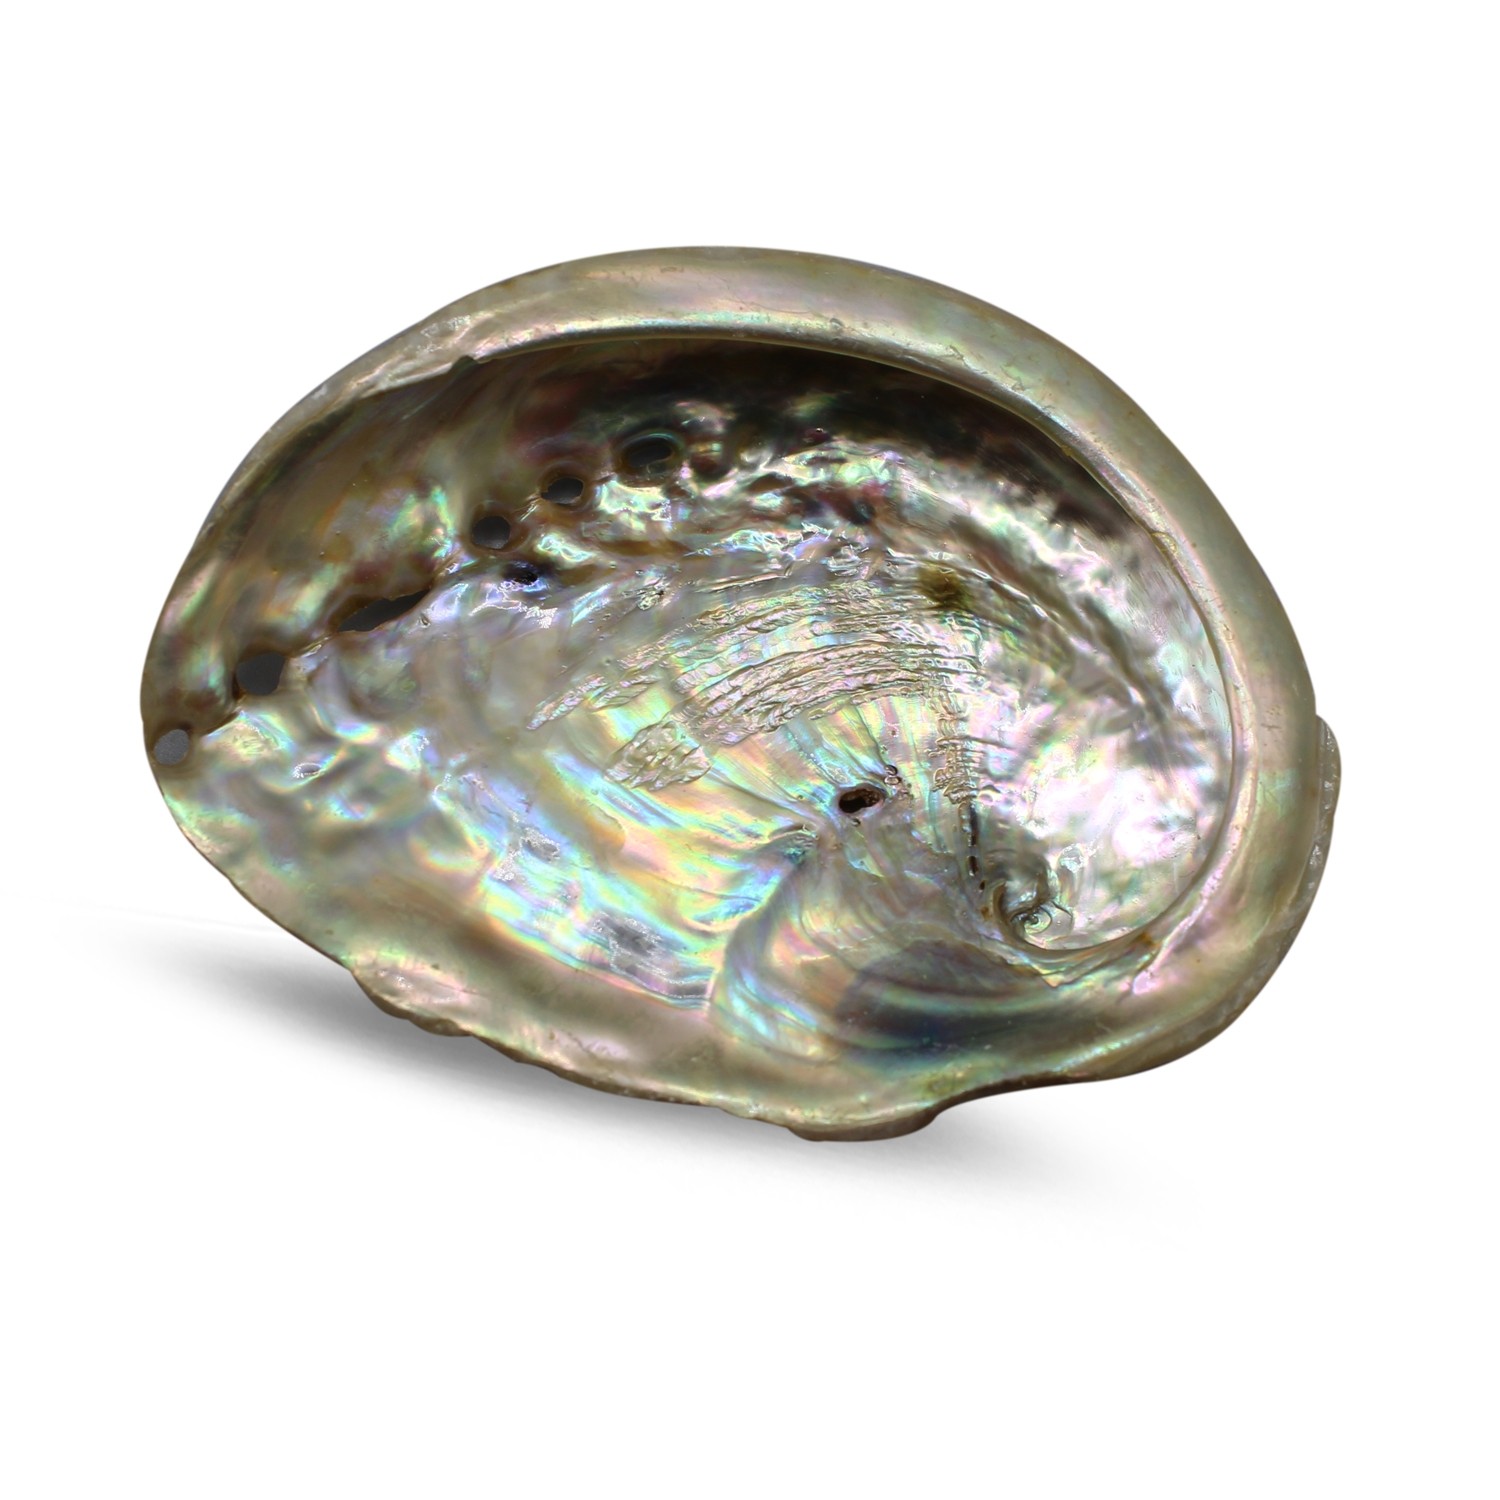 Abalone Muschel (7-9 cm)